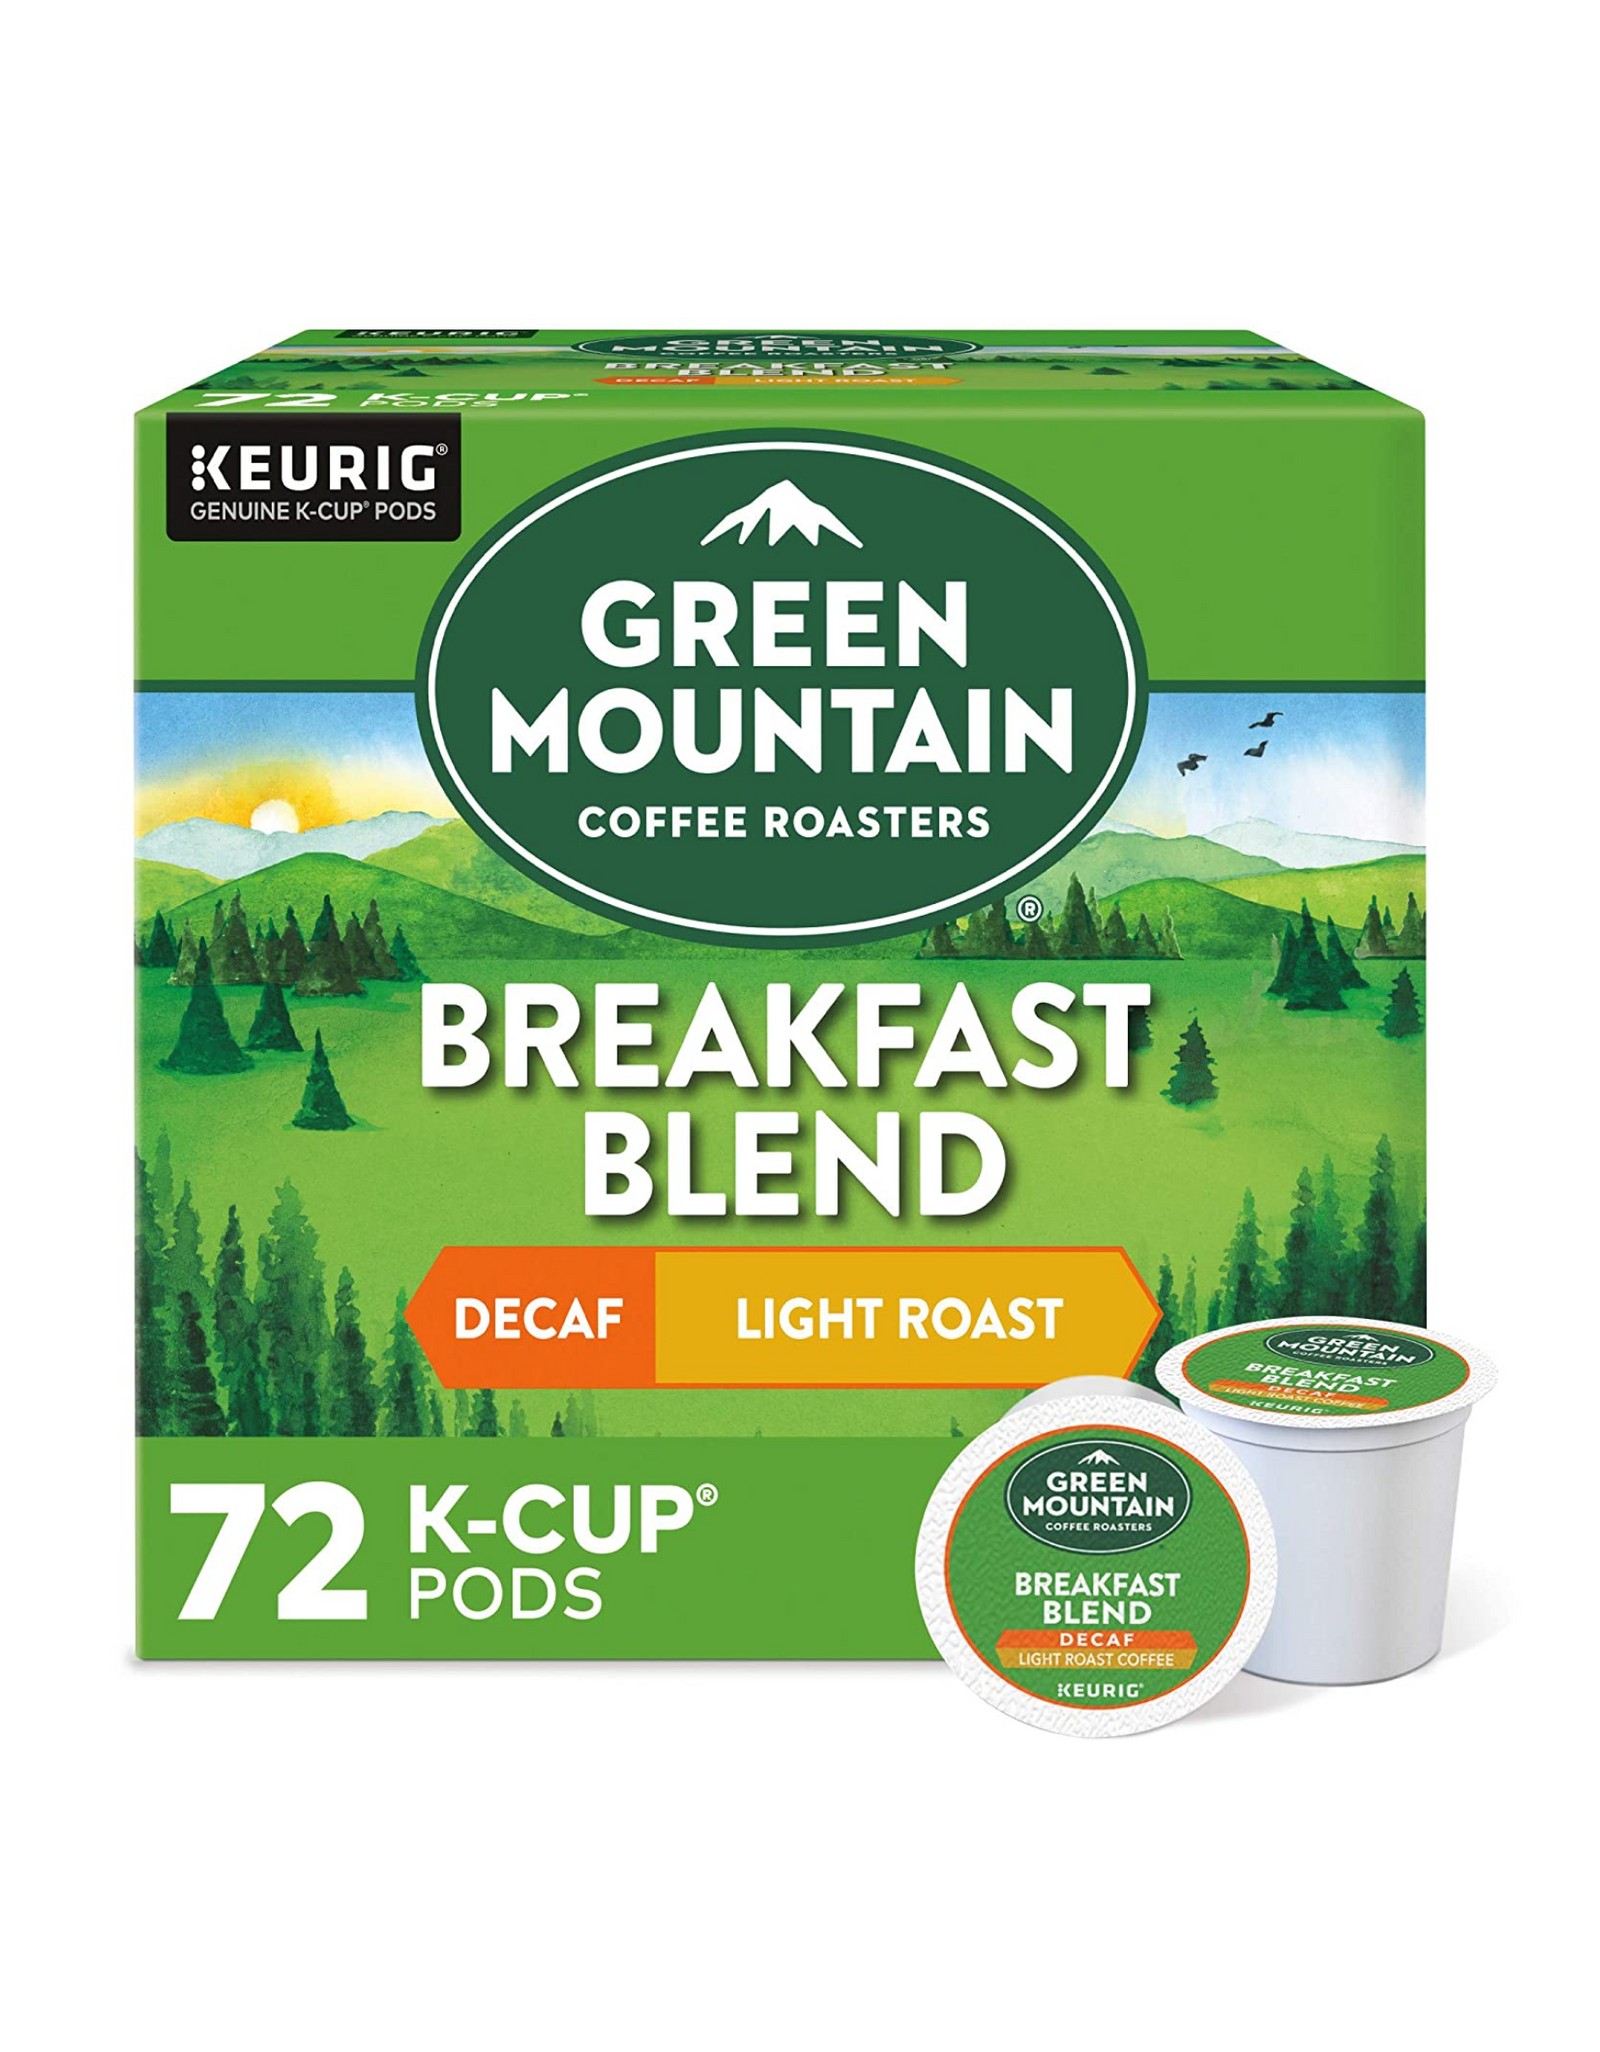 Green Mountain Coffee Roasters Breakfast Blend Keurig K-Cup Pods, Decaf Light Roast Coffee,12 Ct (Pack of 6)